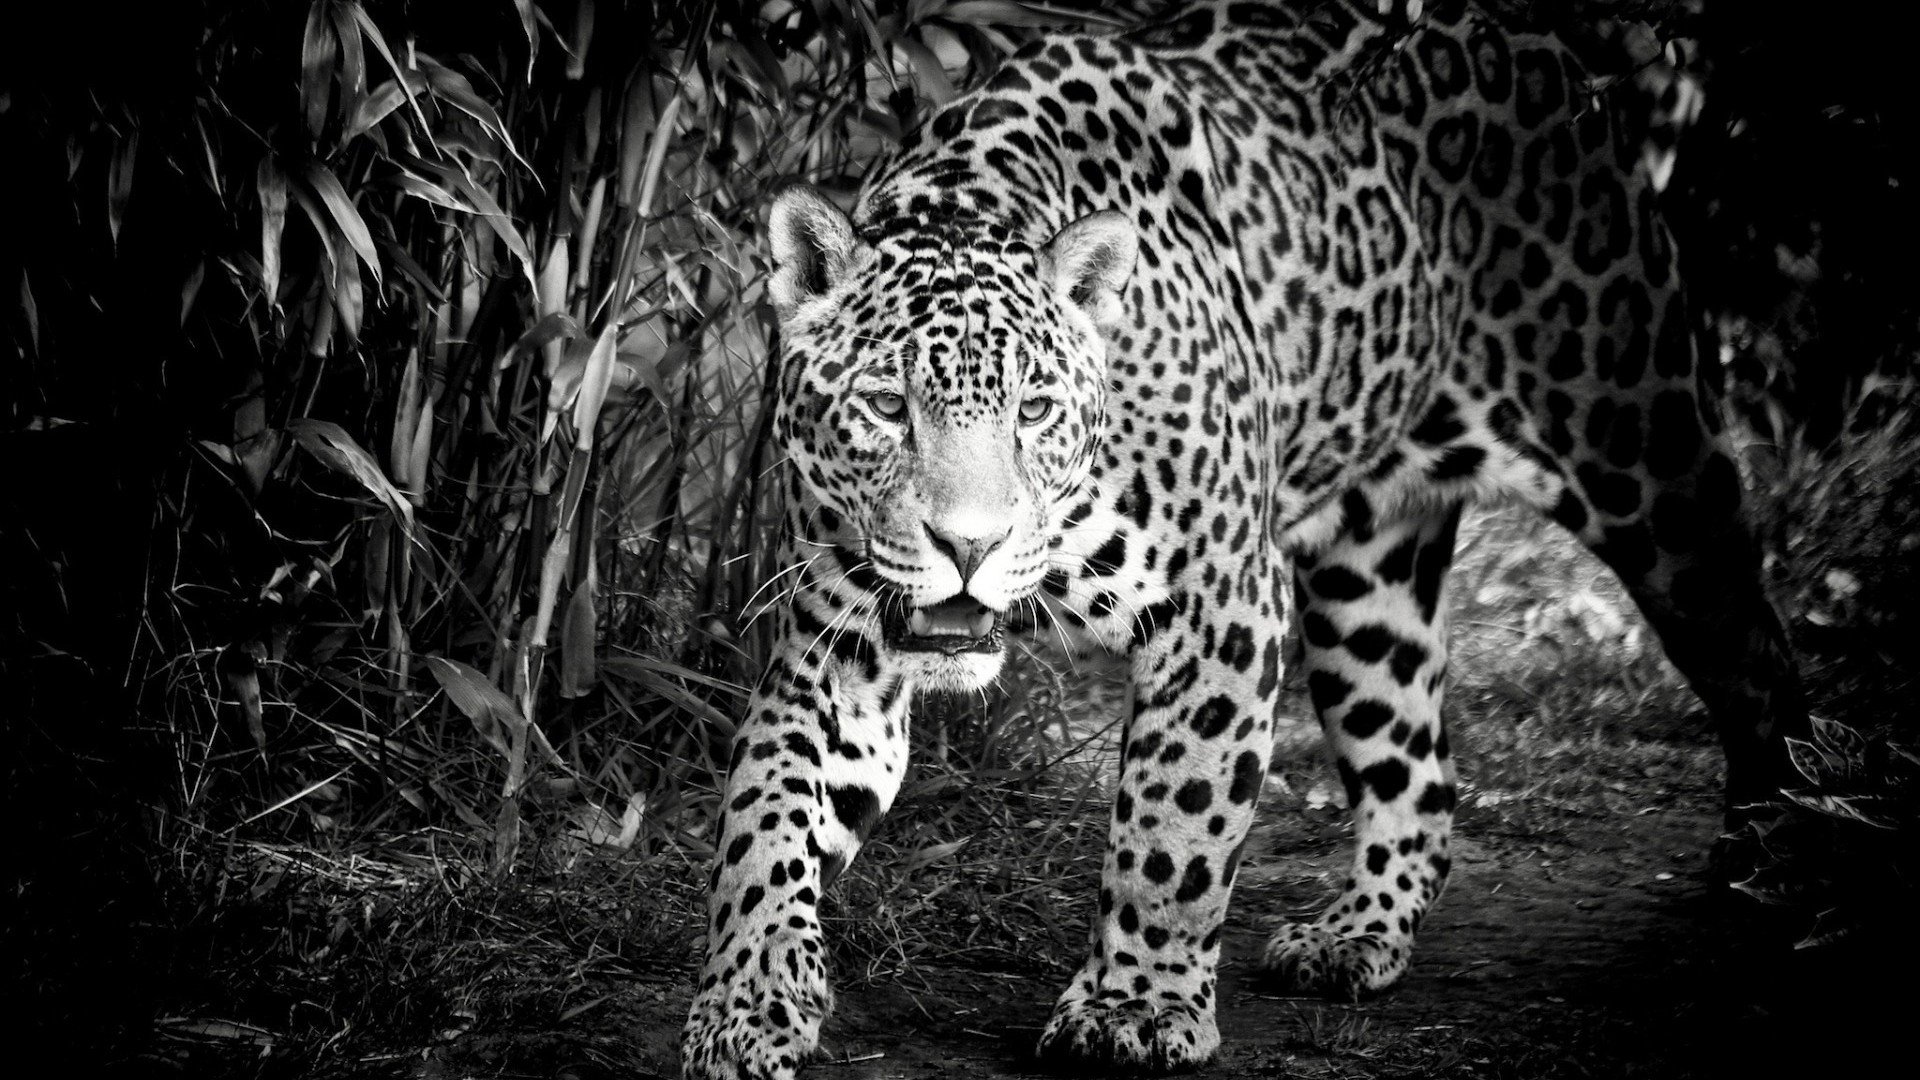 Black and White Jaguar for 1920 x 1080 HDTV 1080p resolution